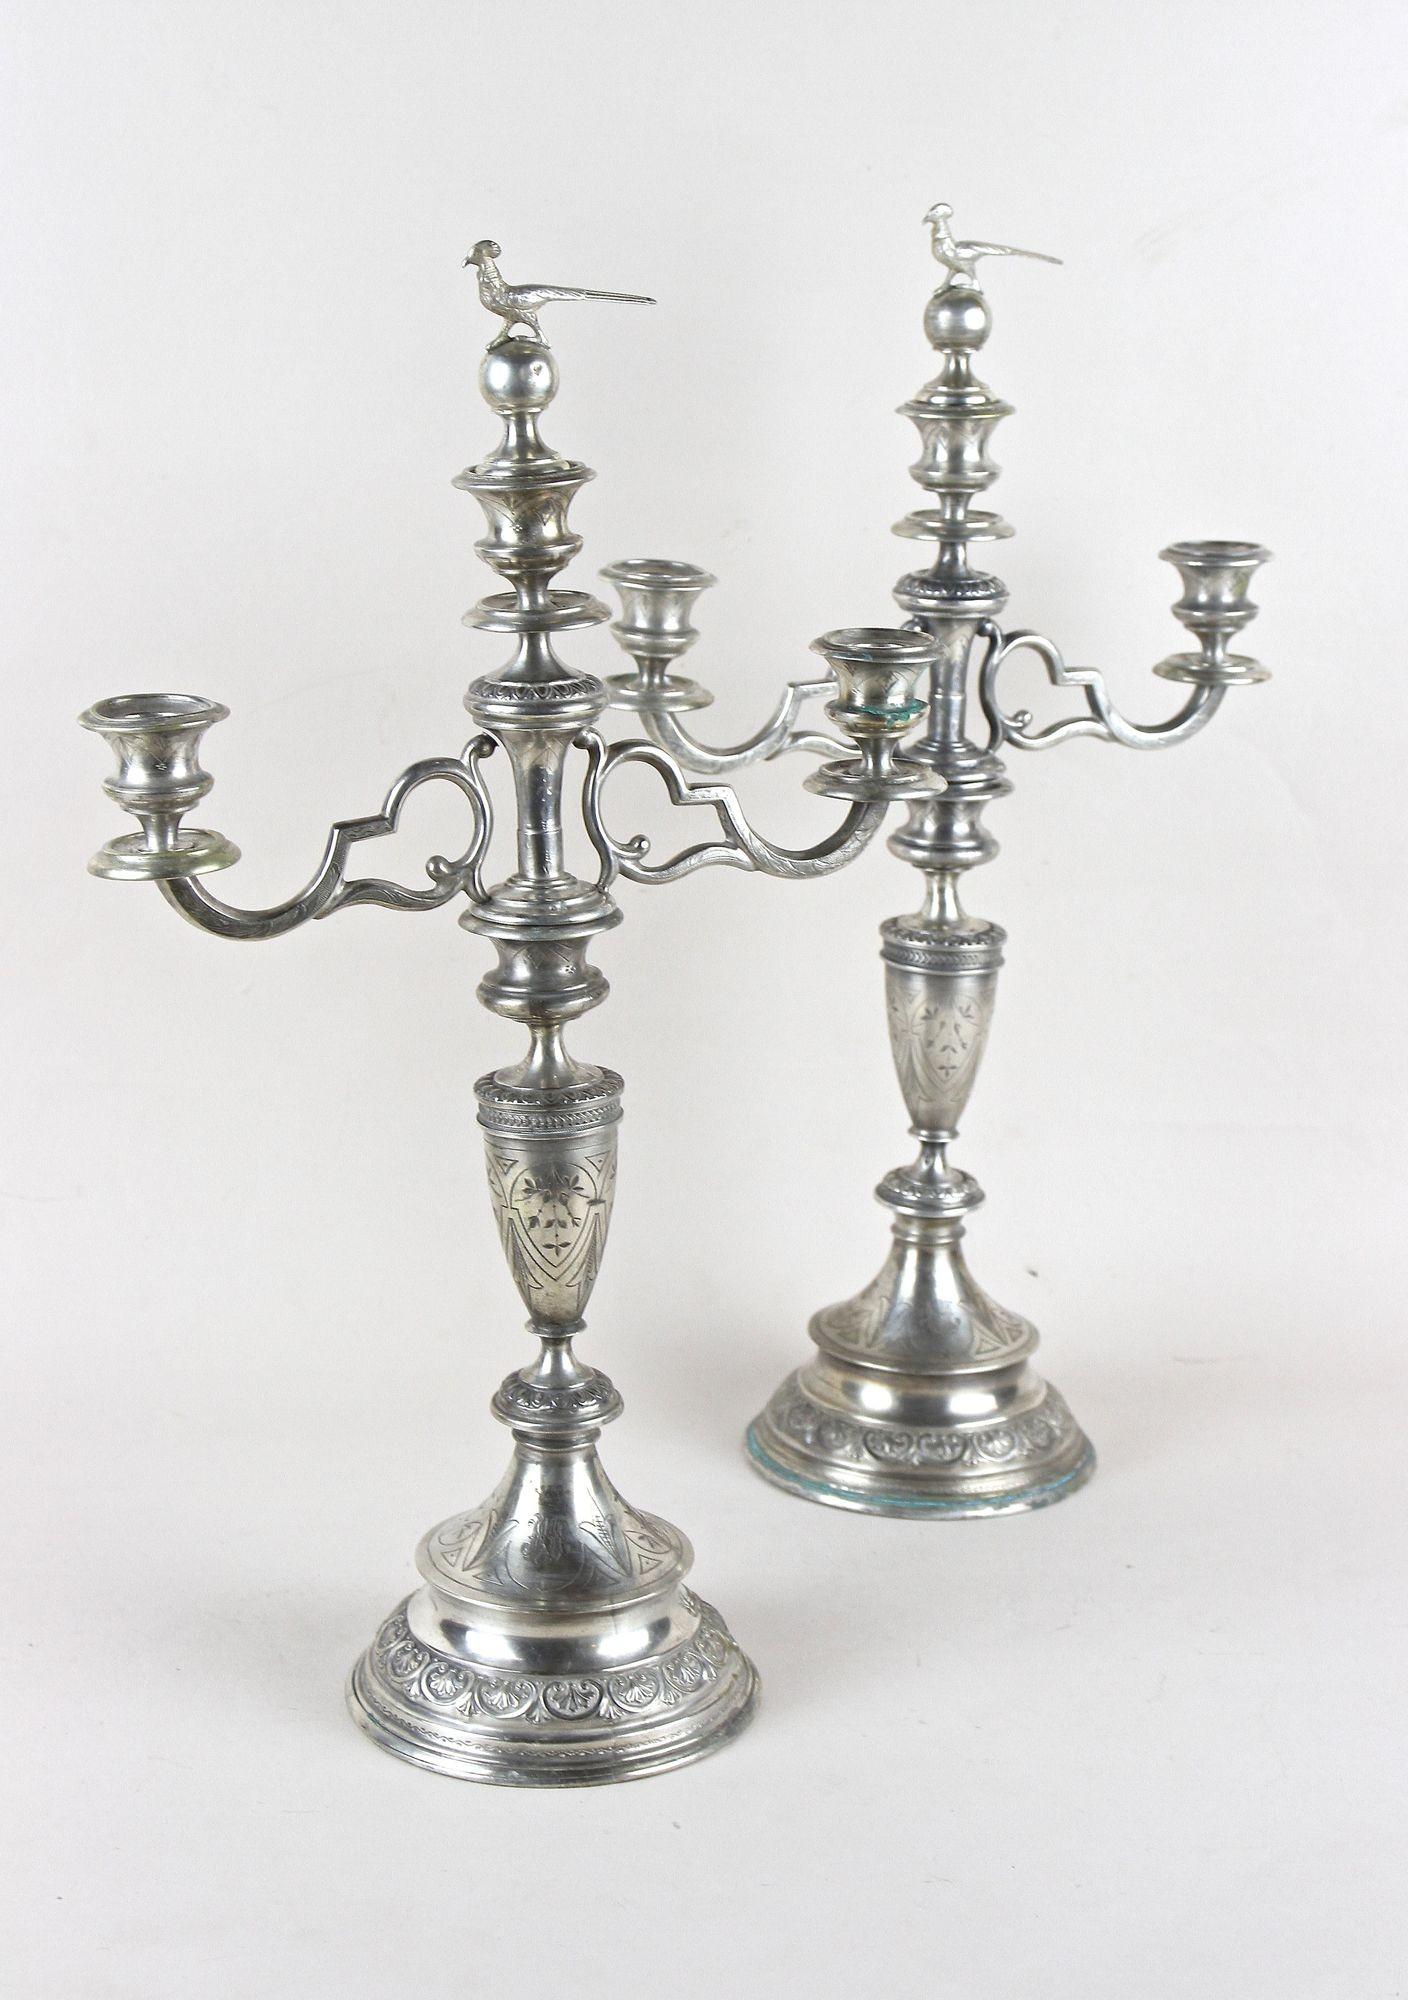 Sehr dekoratives Paar massiver Silberkandelaber aus der Mitte des 19. Jahrhunderts aus der Zeit um 1860 in Österreich. Kunstvoll gestaltet mit erstaunlich anmutenden kleinen Details, wurden diese großen außergewöhnlichen Silberleuchter aus